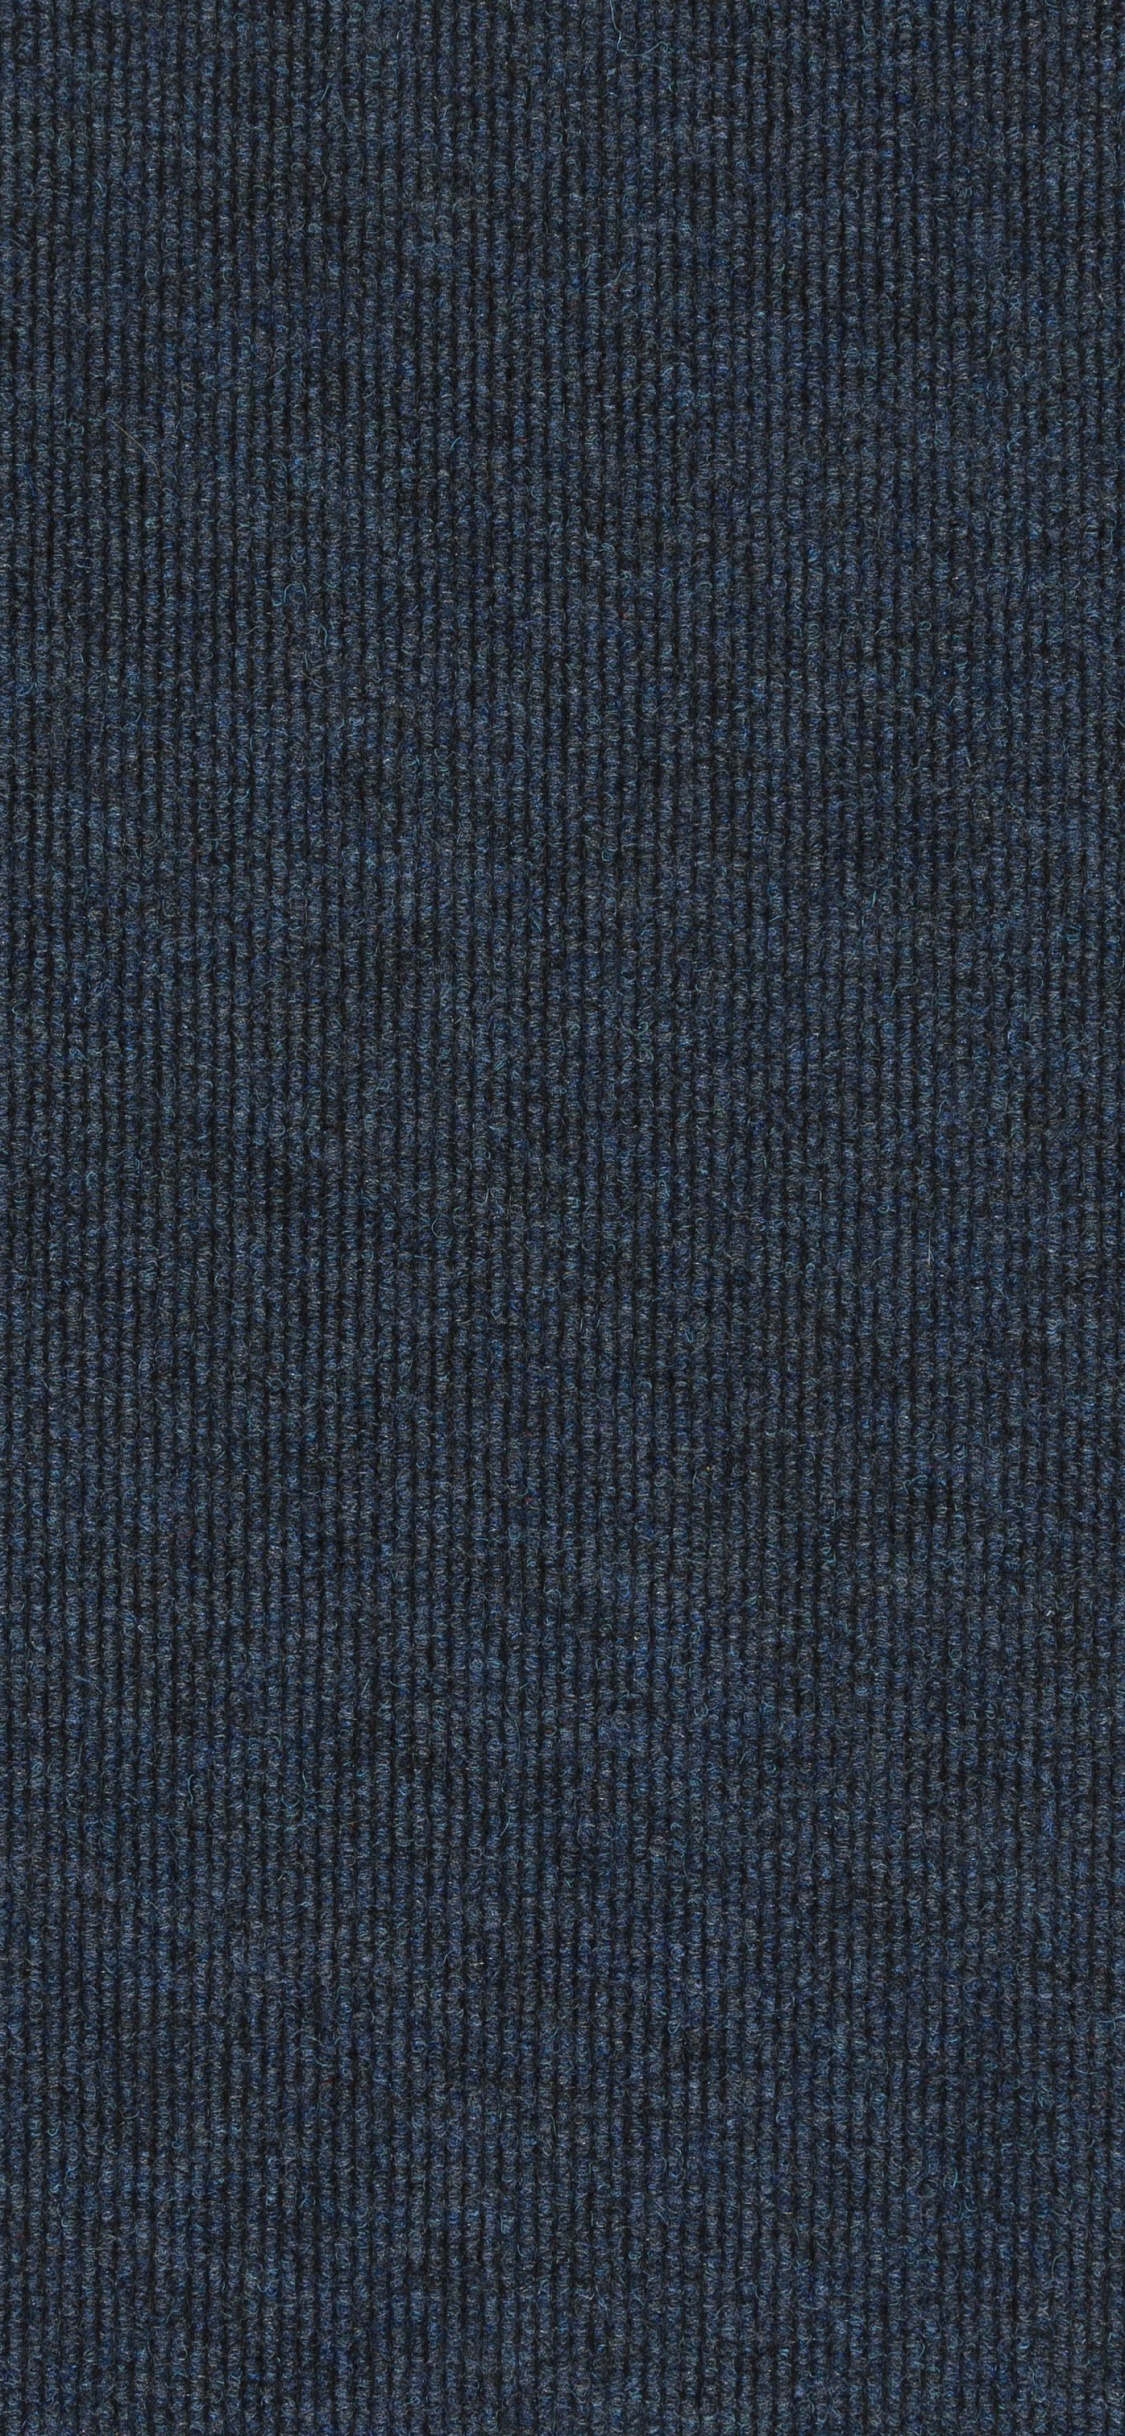 Textil Azul Con Fondo Negro. Wallpaper in 1125x2436 Resolution